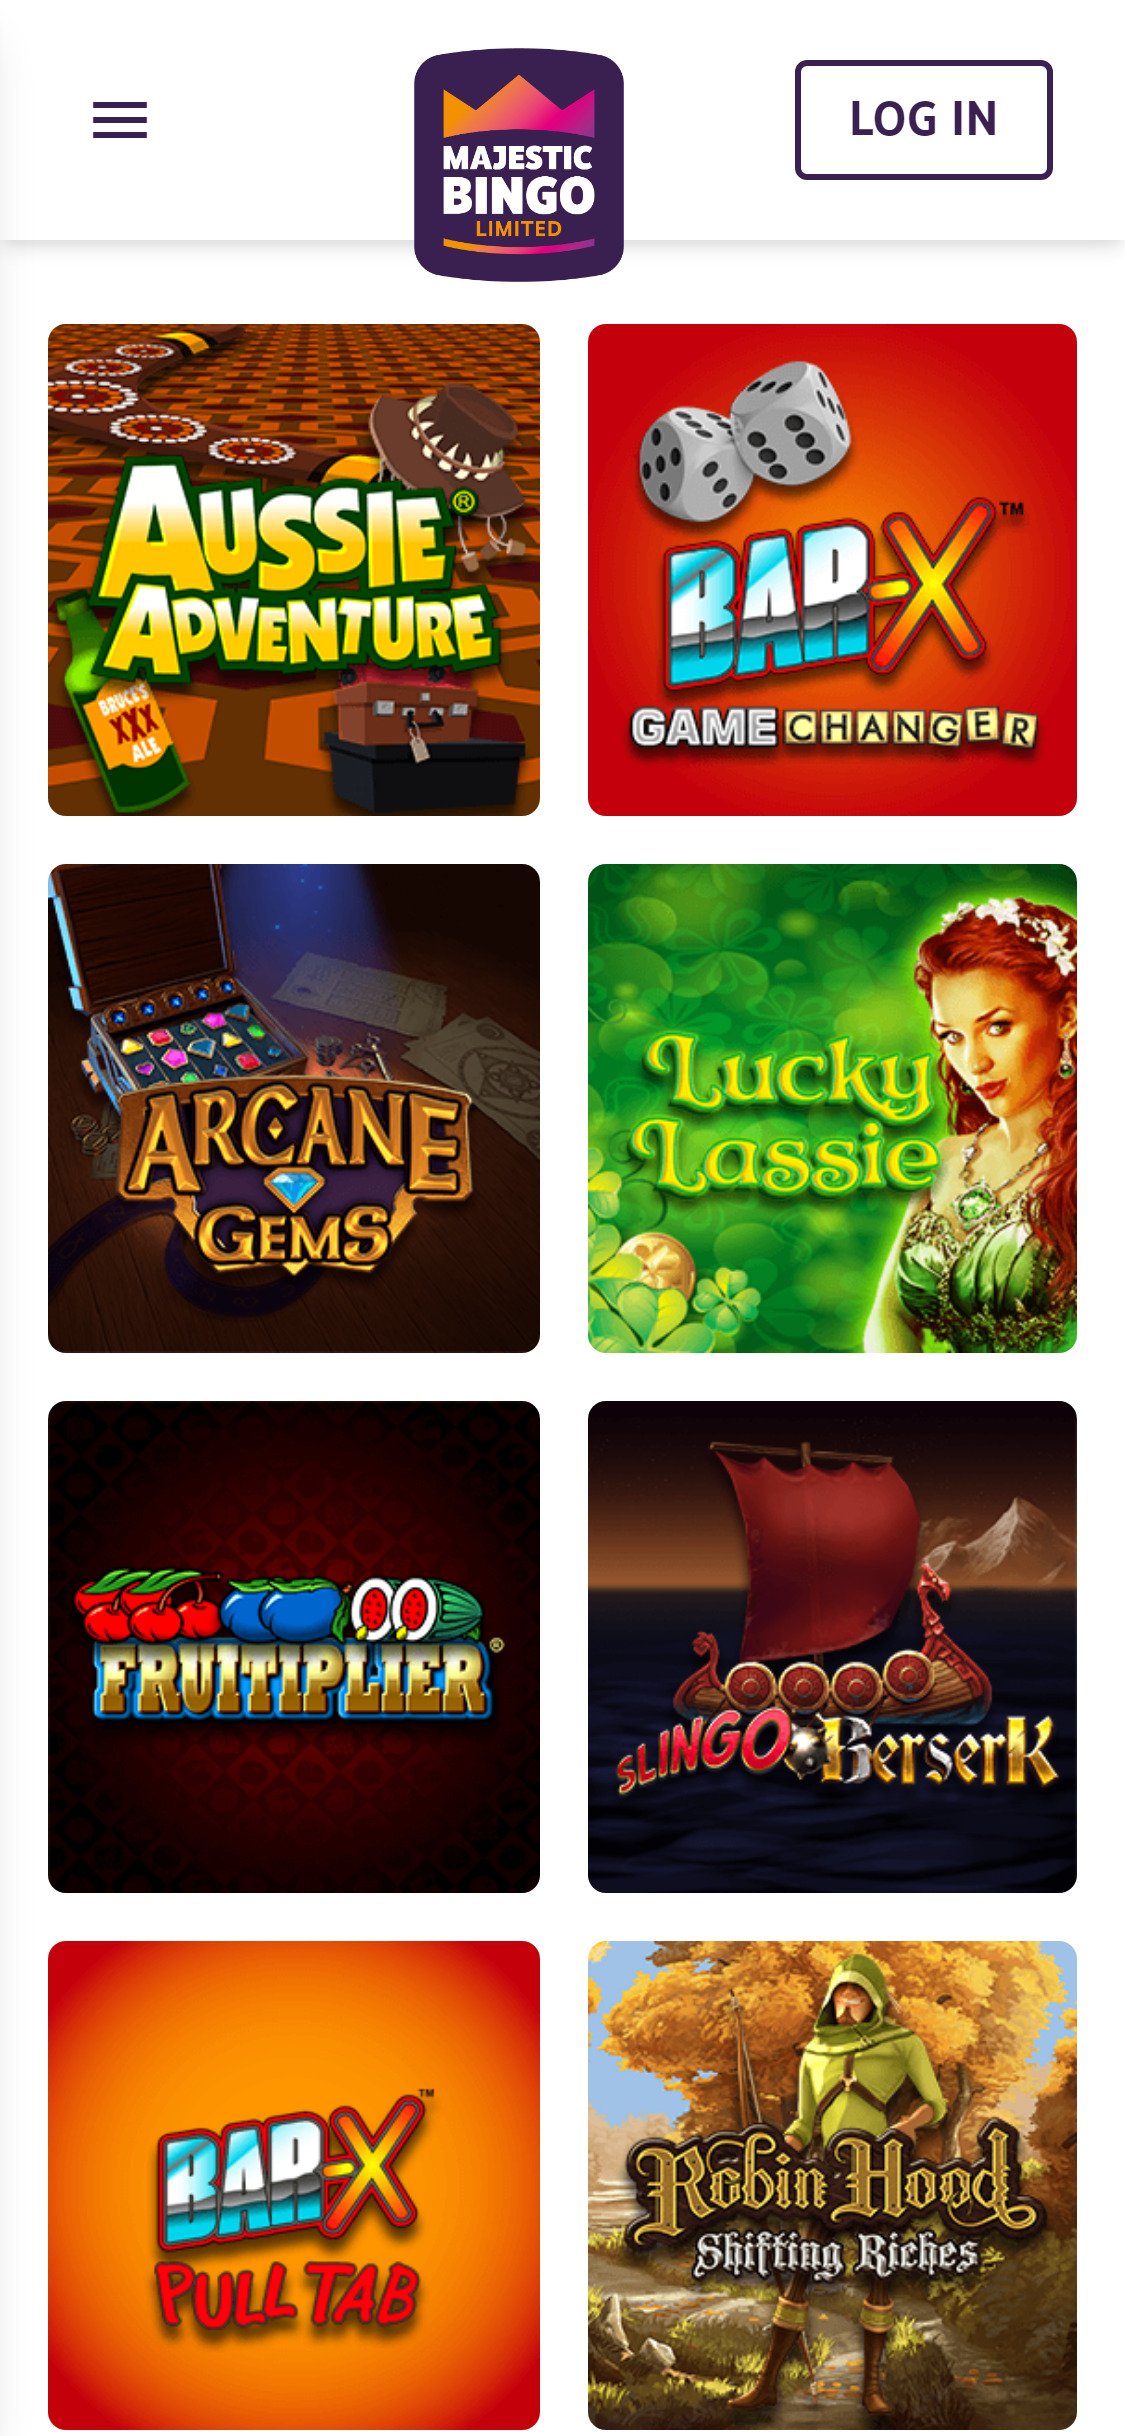 Majestic Bingo Casino Mobile Games Review